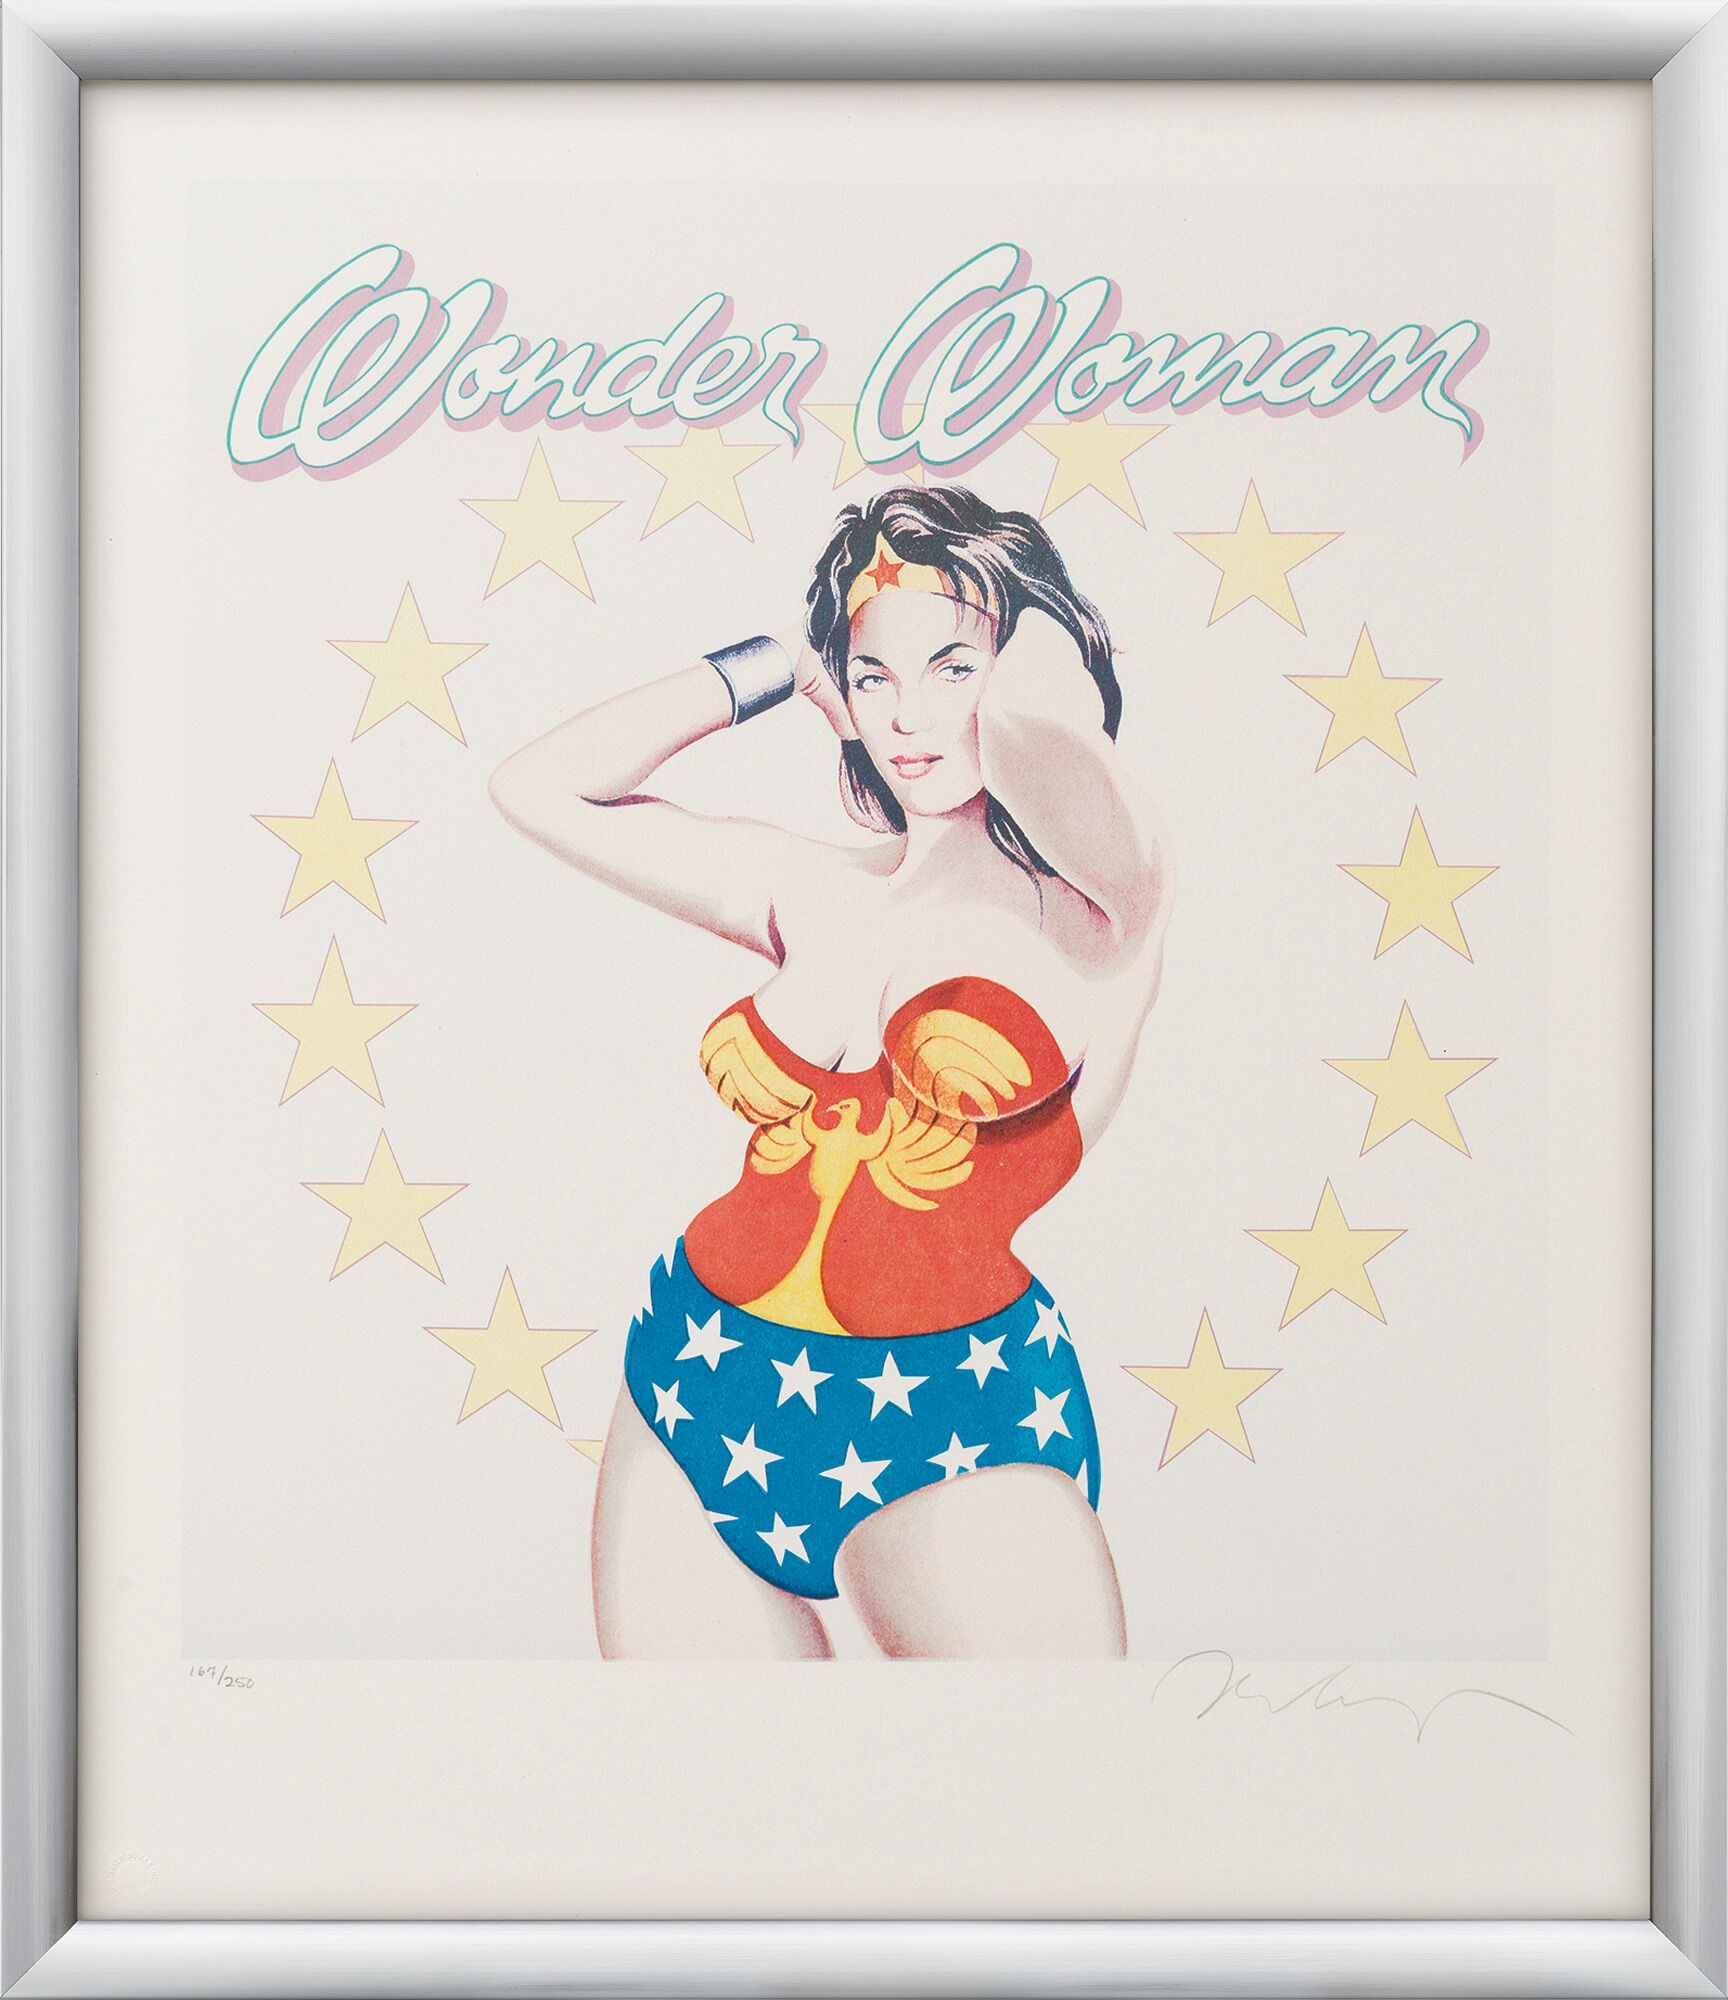 Beeld "Wonder Woman" (1979) von Mel Ramos